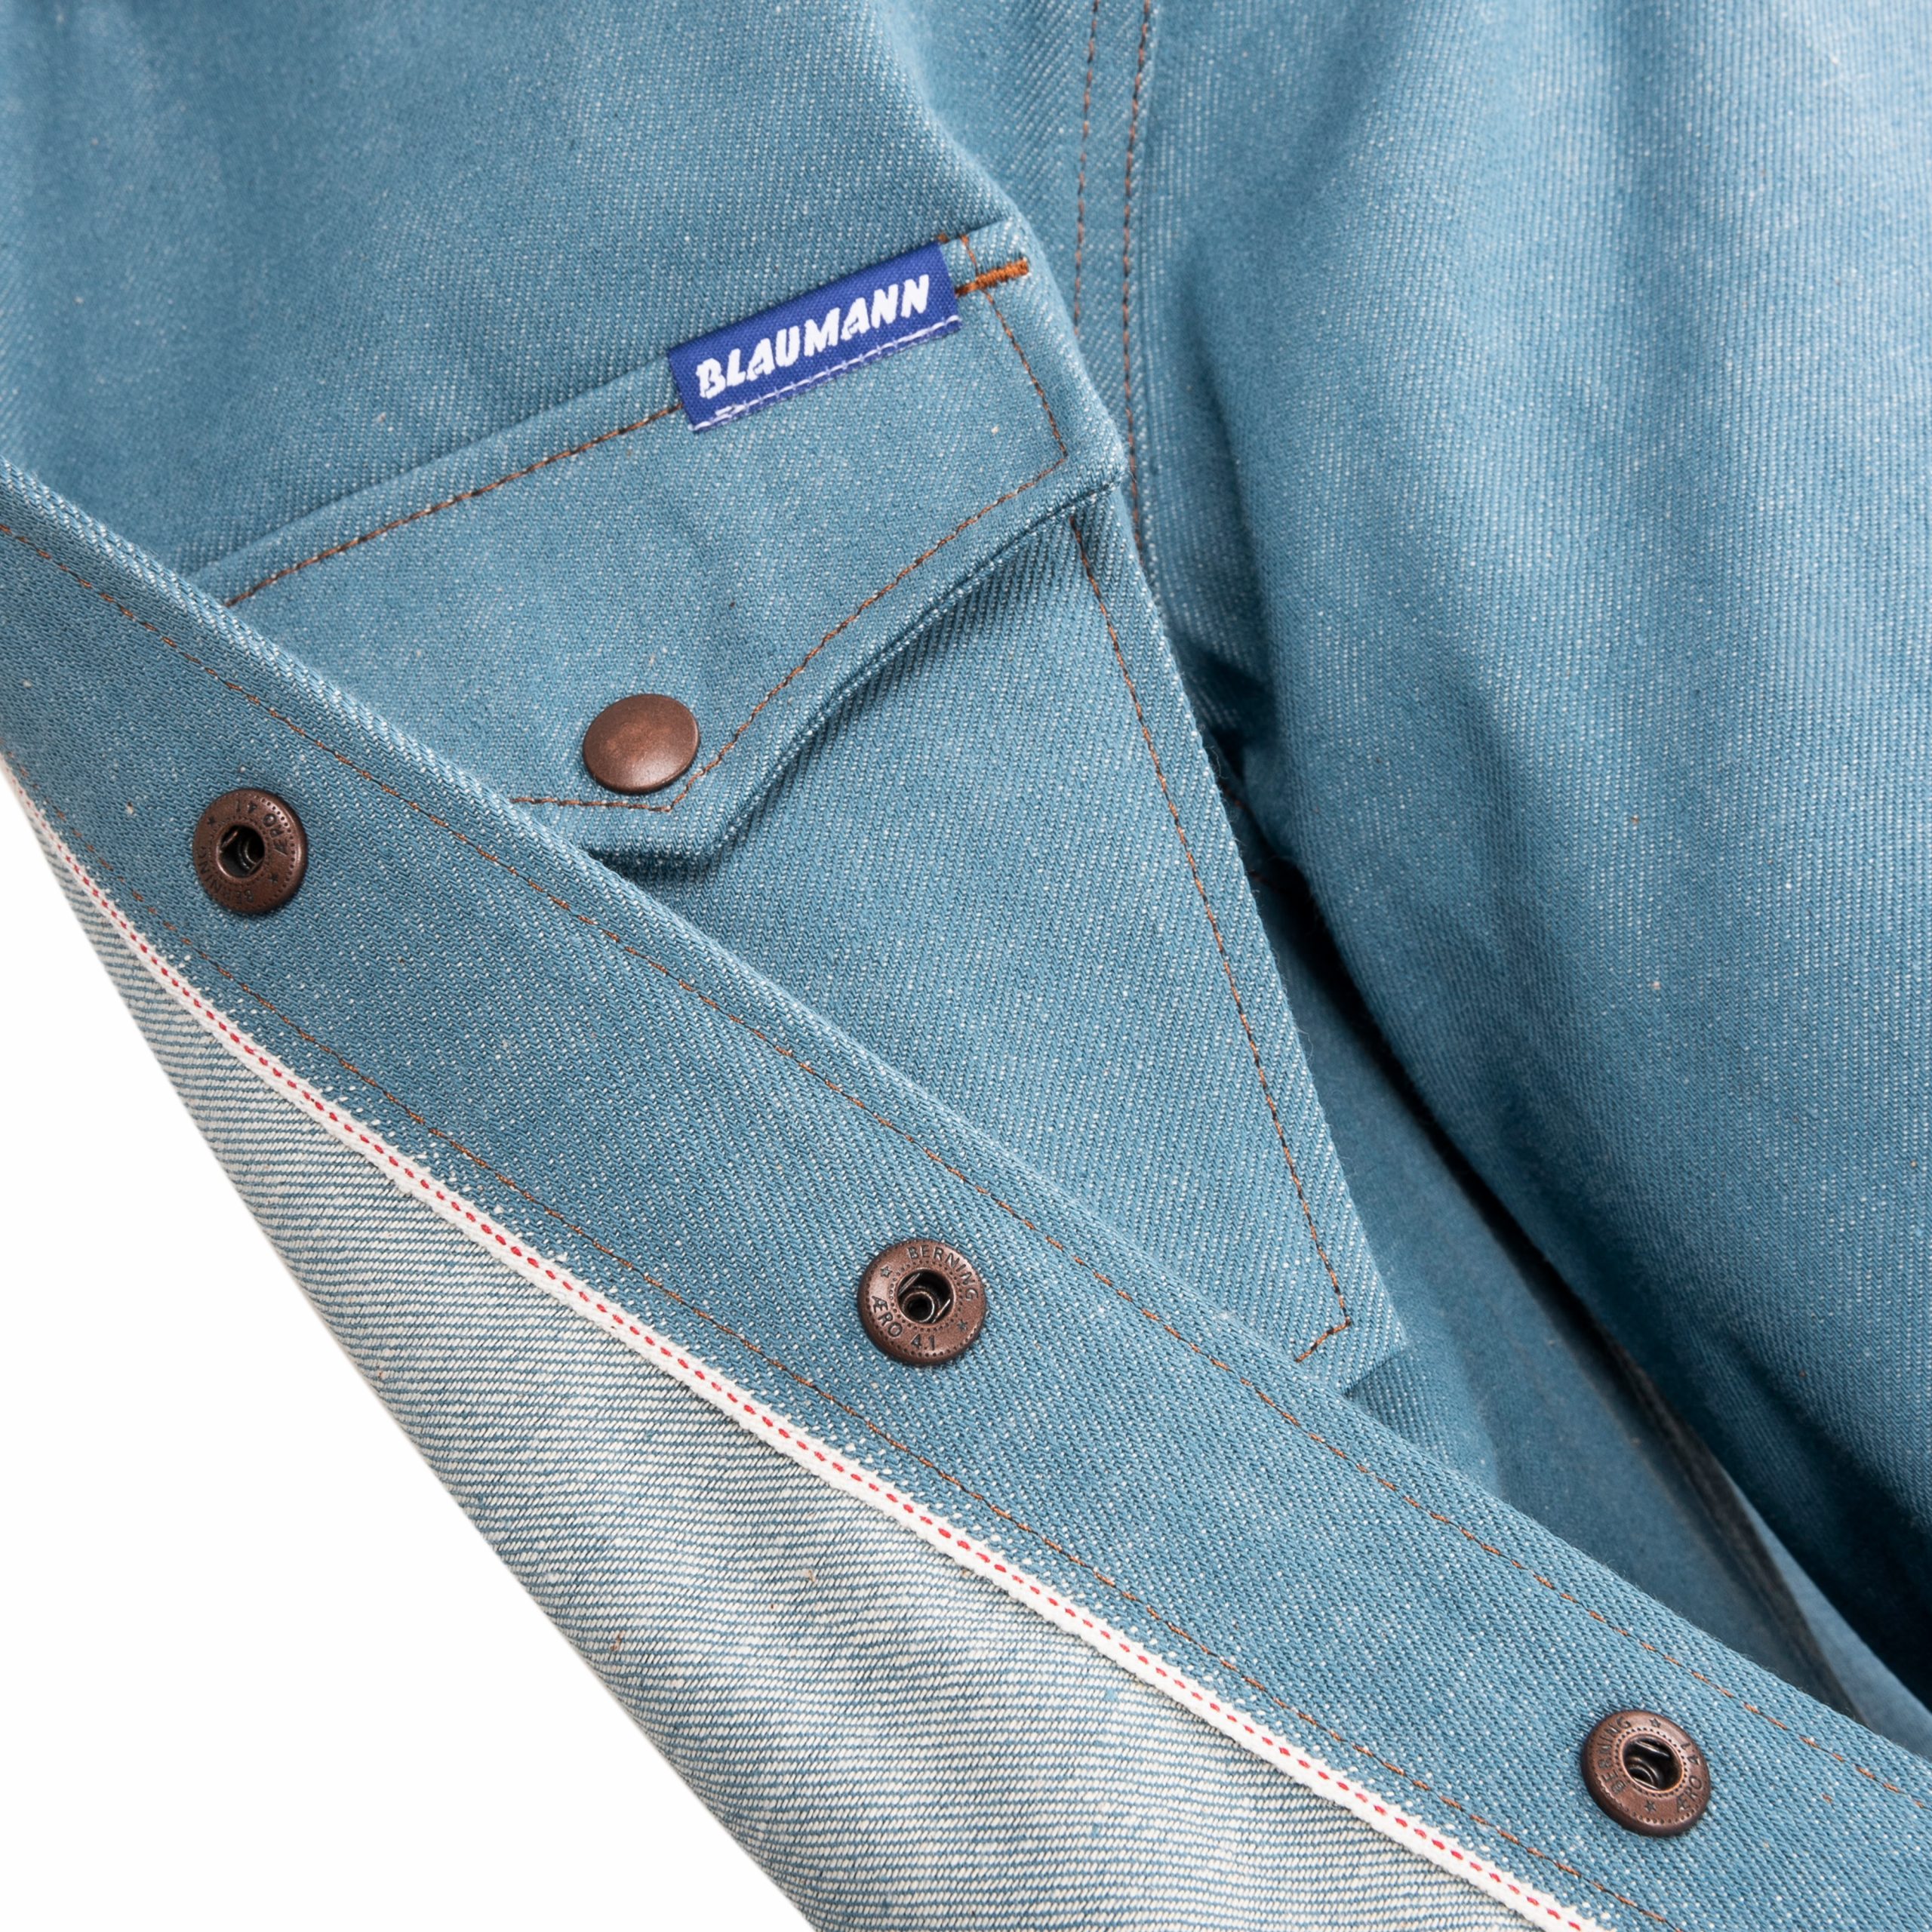 https://www.b74.de/wp-content/uploads/2021/03/Blaumann-Shirt-Selvedge-Denim-Special-Fabric-Light-Blue-25-scaled.jpg